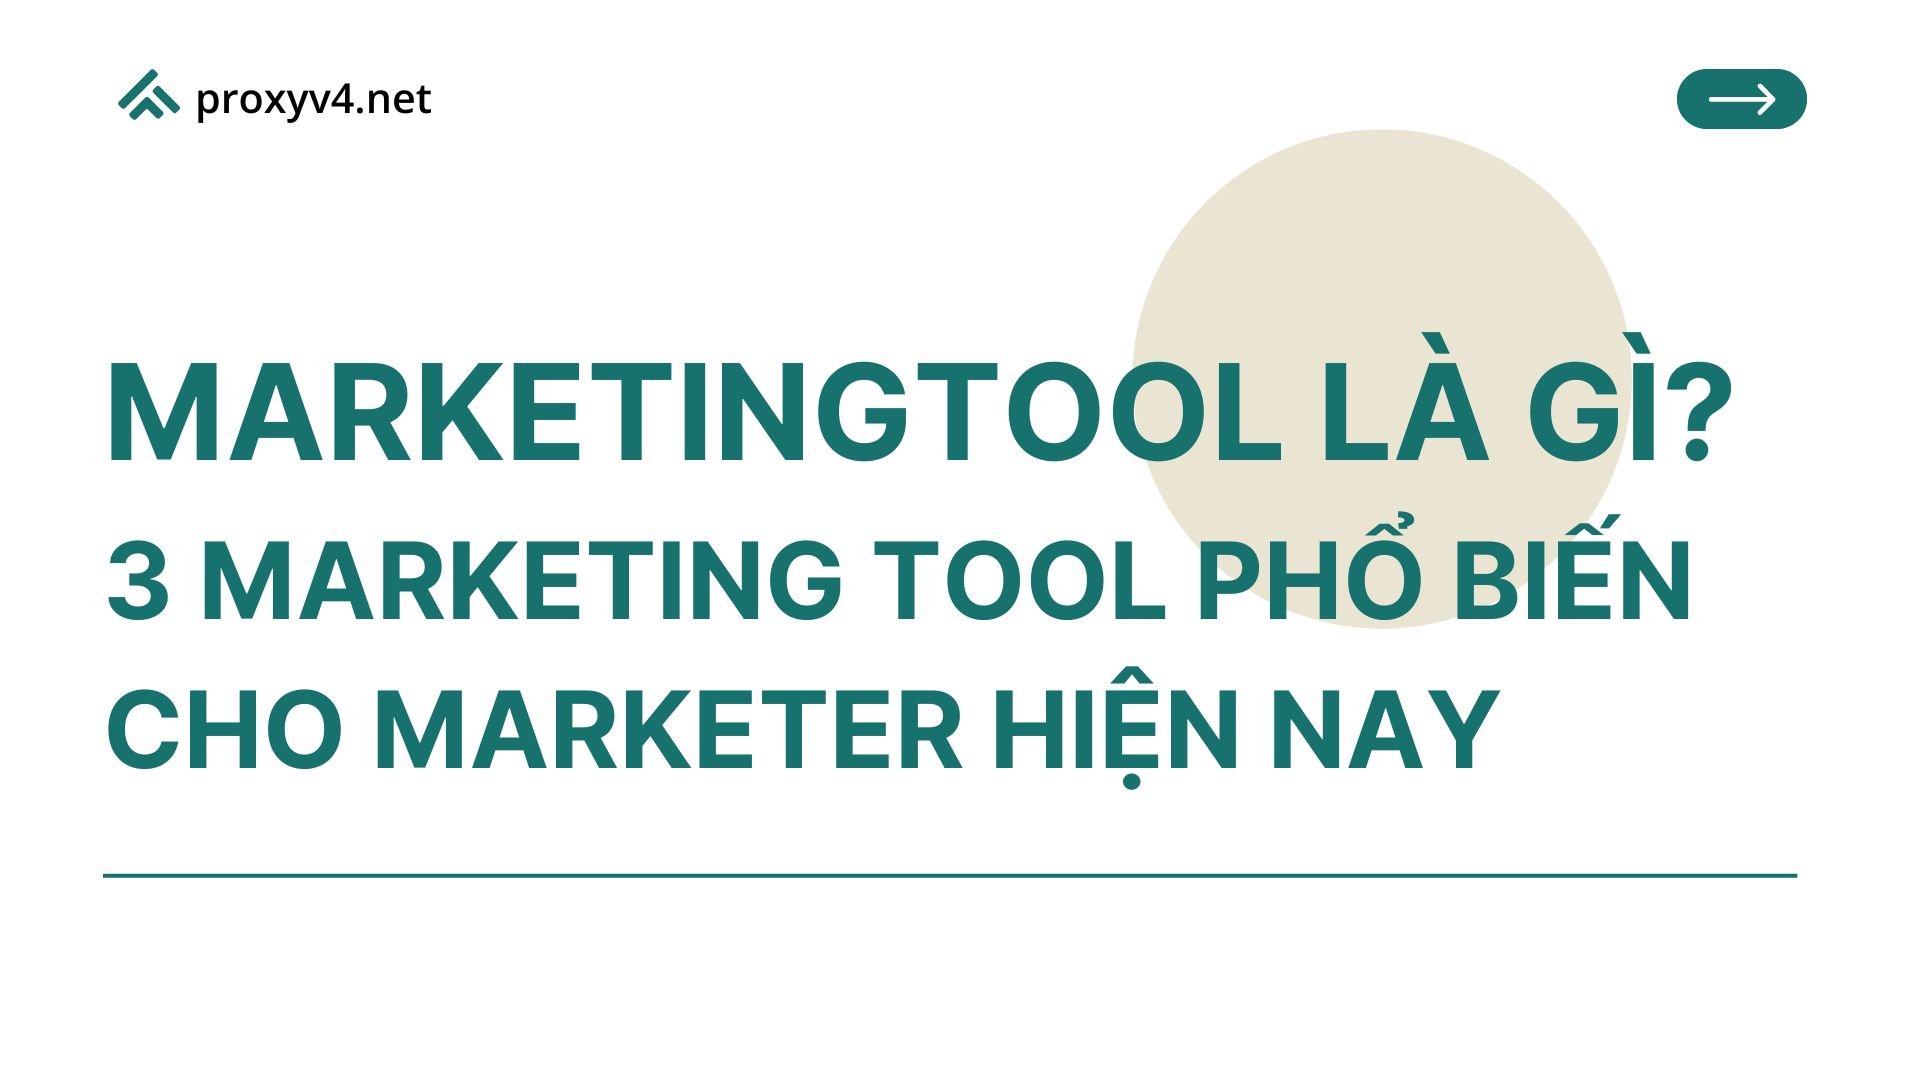 Marketingtool là gì? 3 Marketing tool phổ biến cho marketer hiện nay